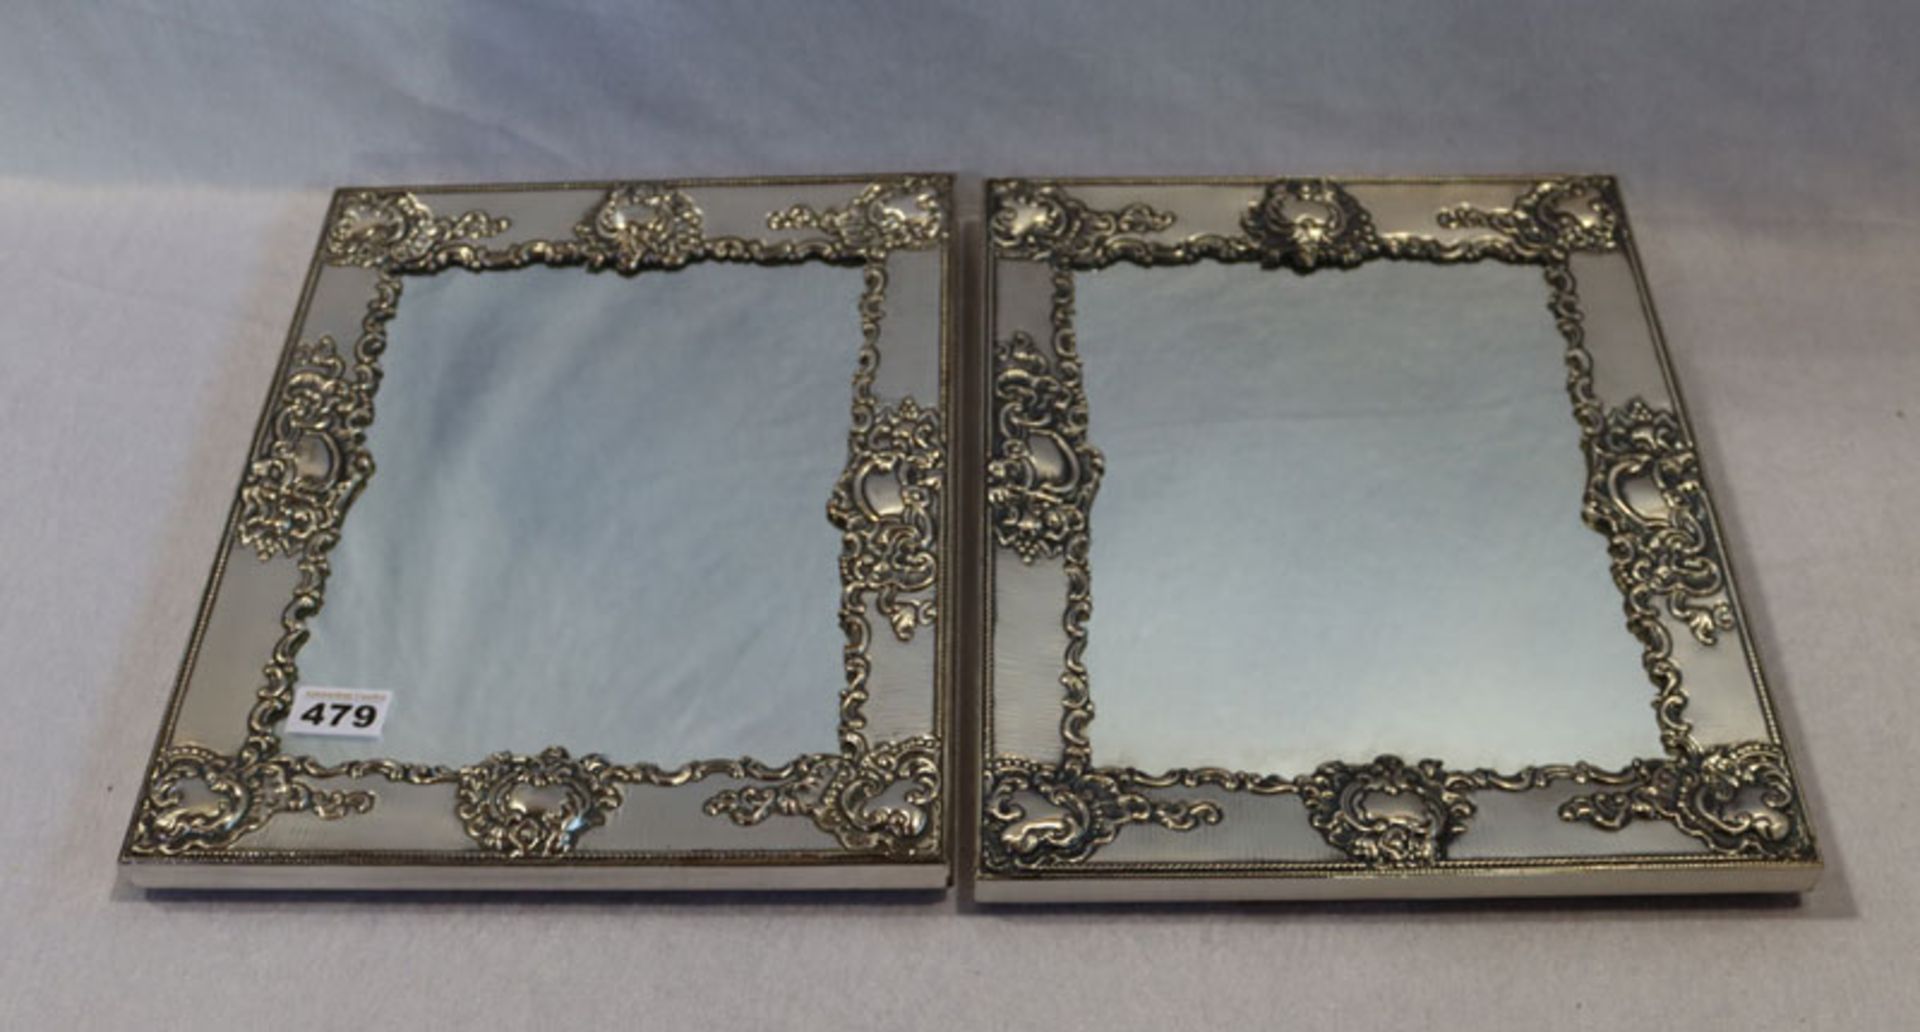 2 Tischspiegel mit versilberten, reliefierten Rahmen, rückseitig mit Holz, incl. Rahmen 37,5 cm x 30